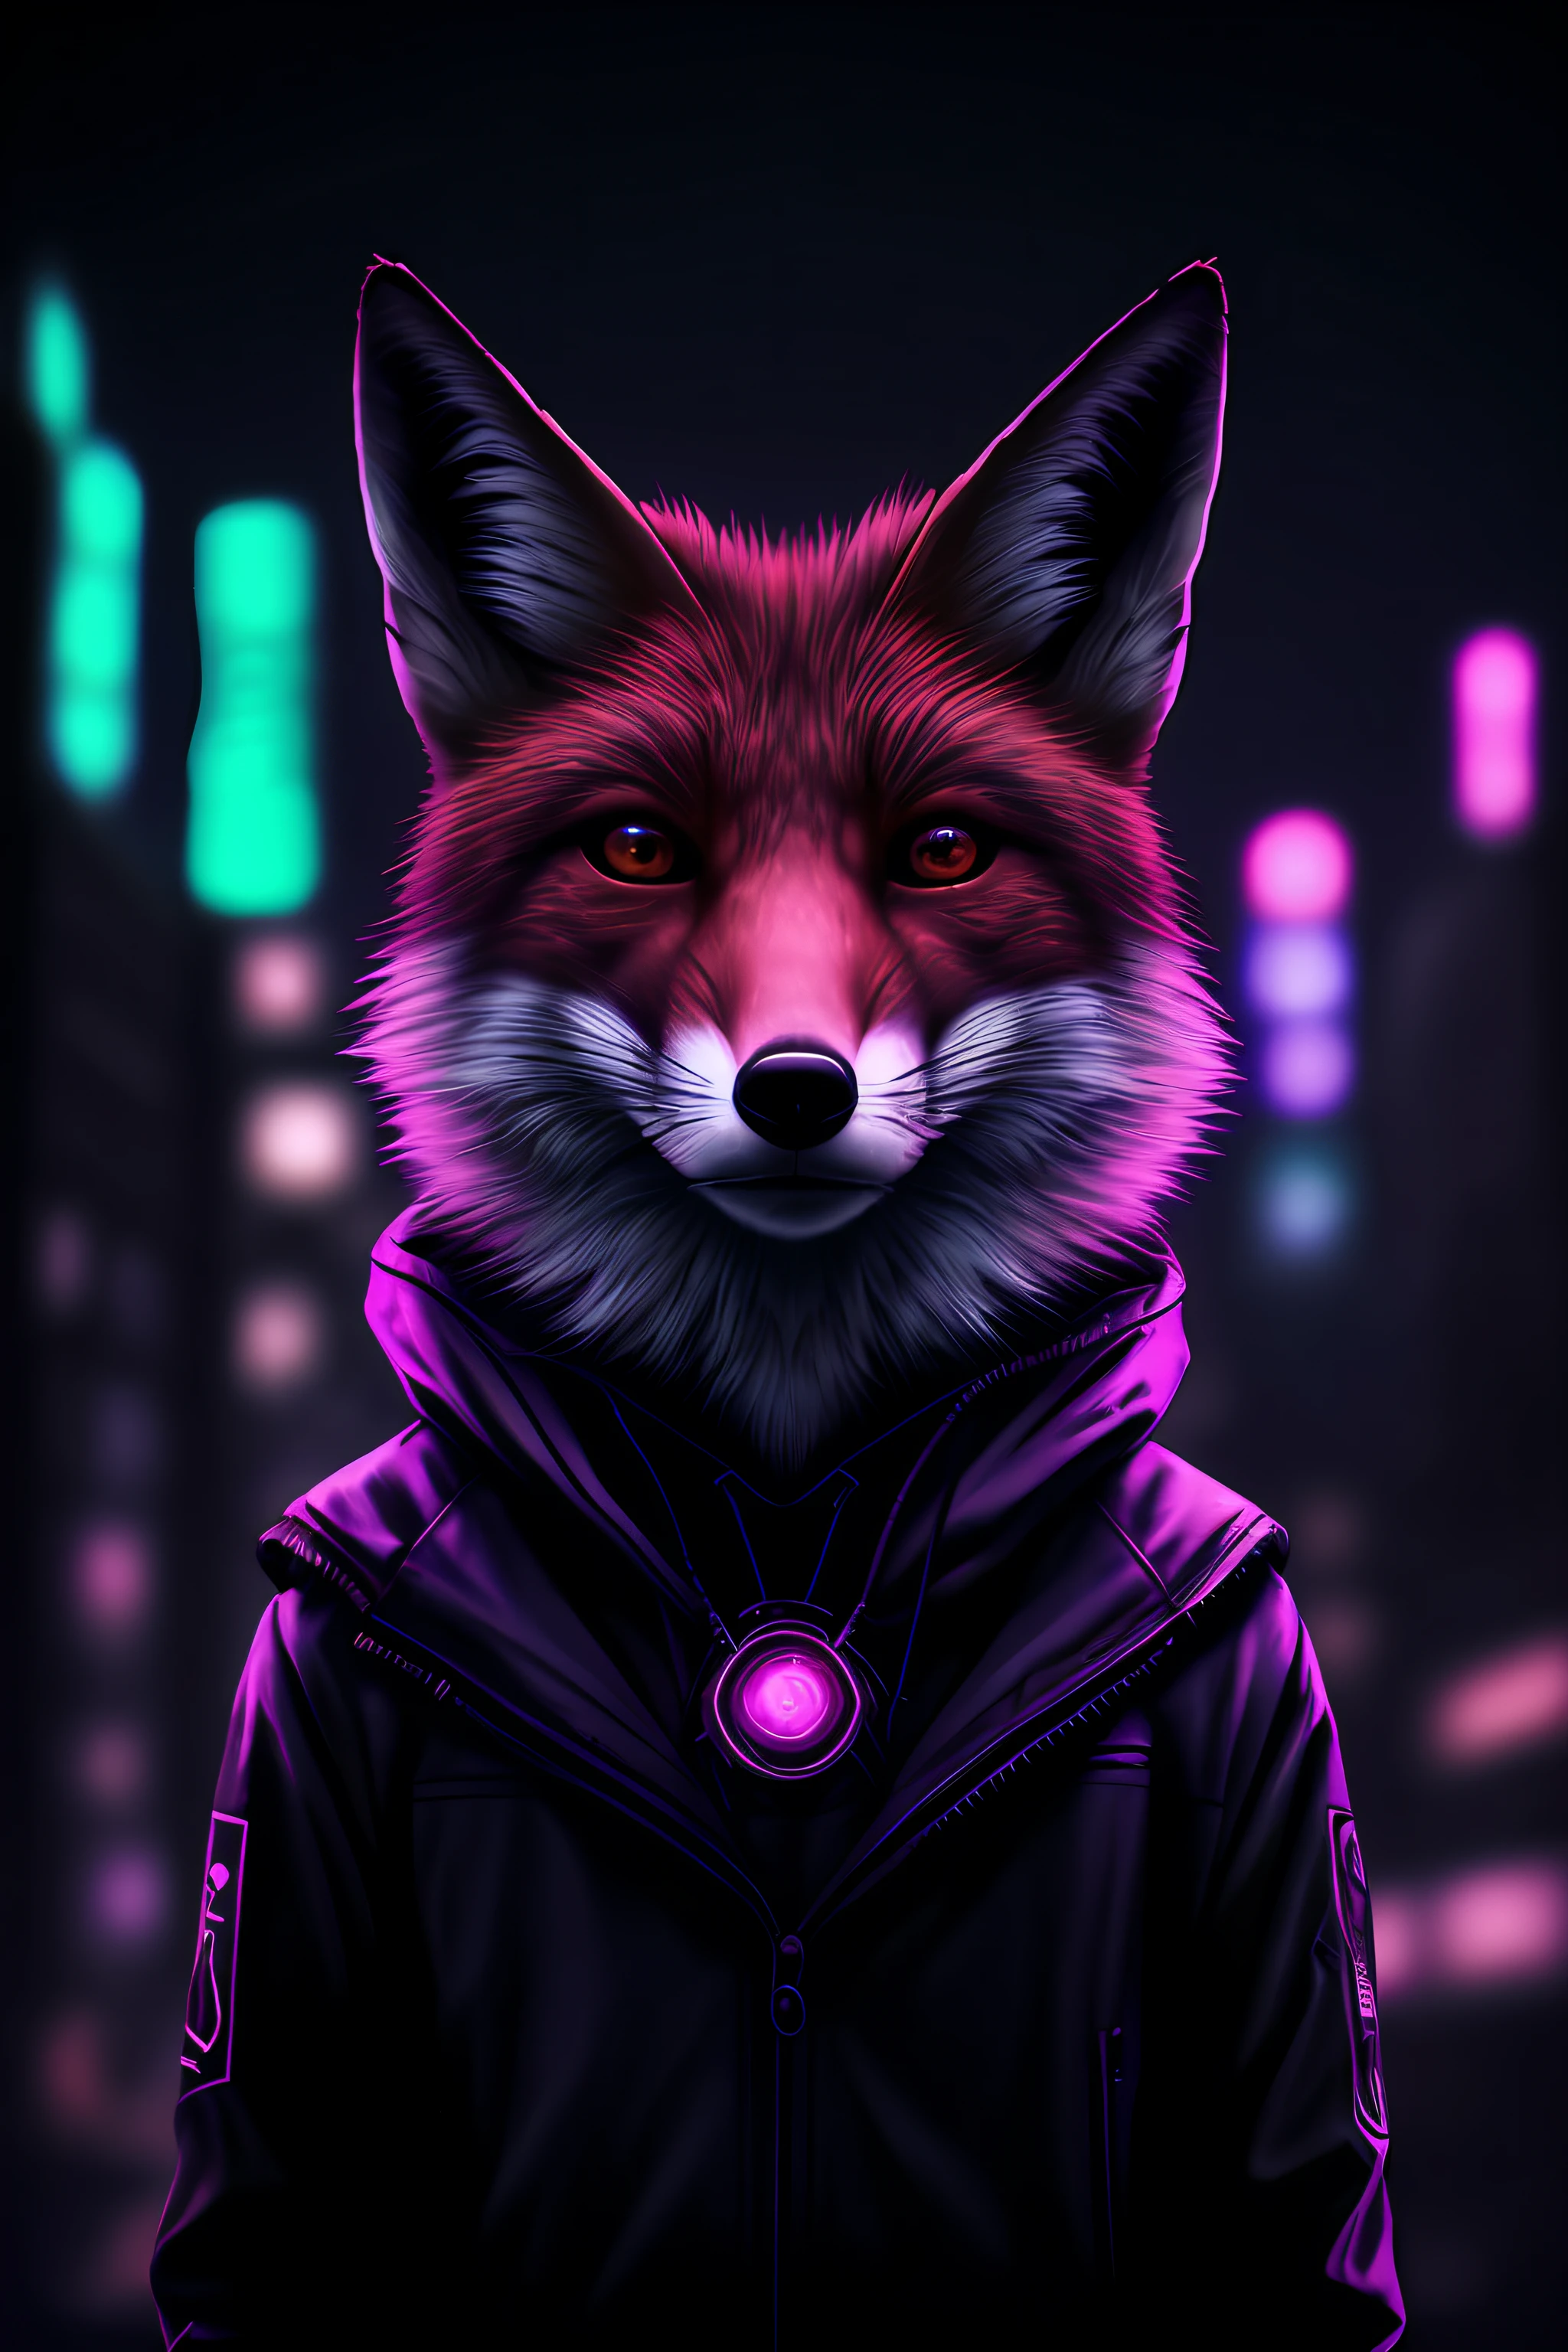 Híper realista, Retrato de Fox, animal, ciudad ciberpunk, color frio, noche, luz cinemática, luz de neón púrpura, bokeh, luz de llanta